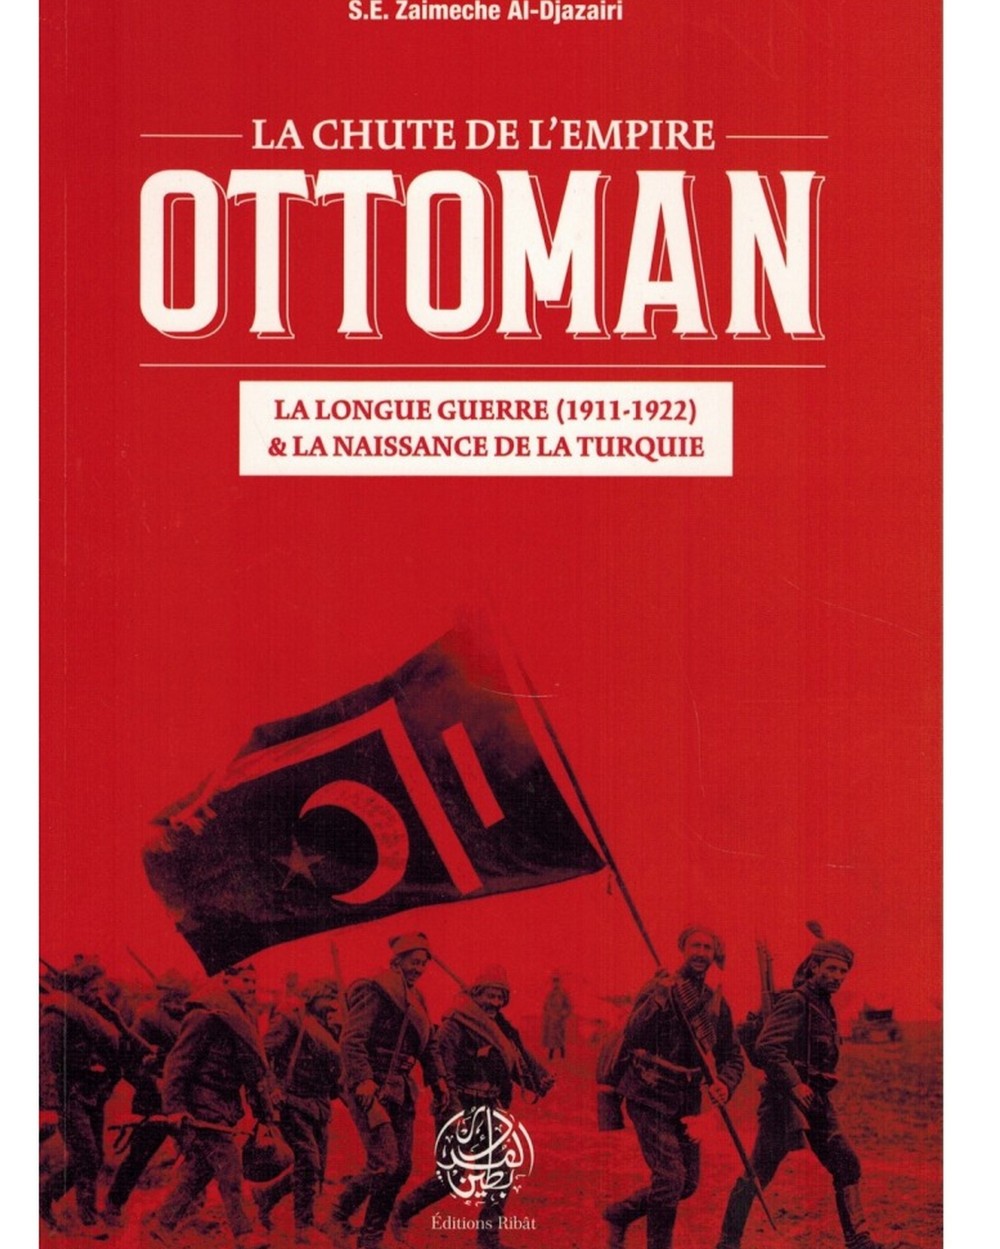 La chute de L'Empire Ottoman